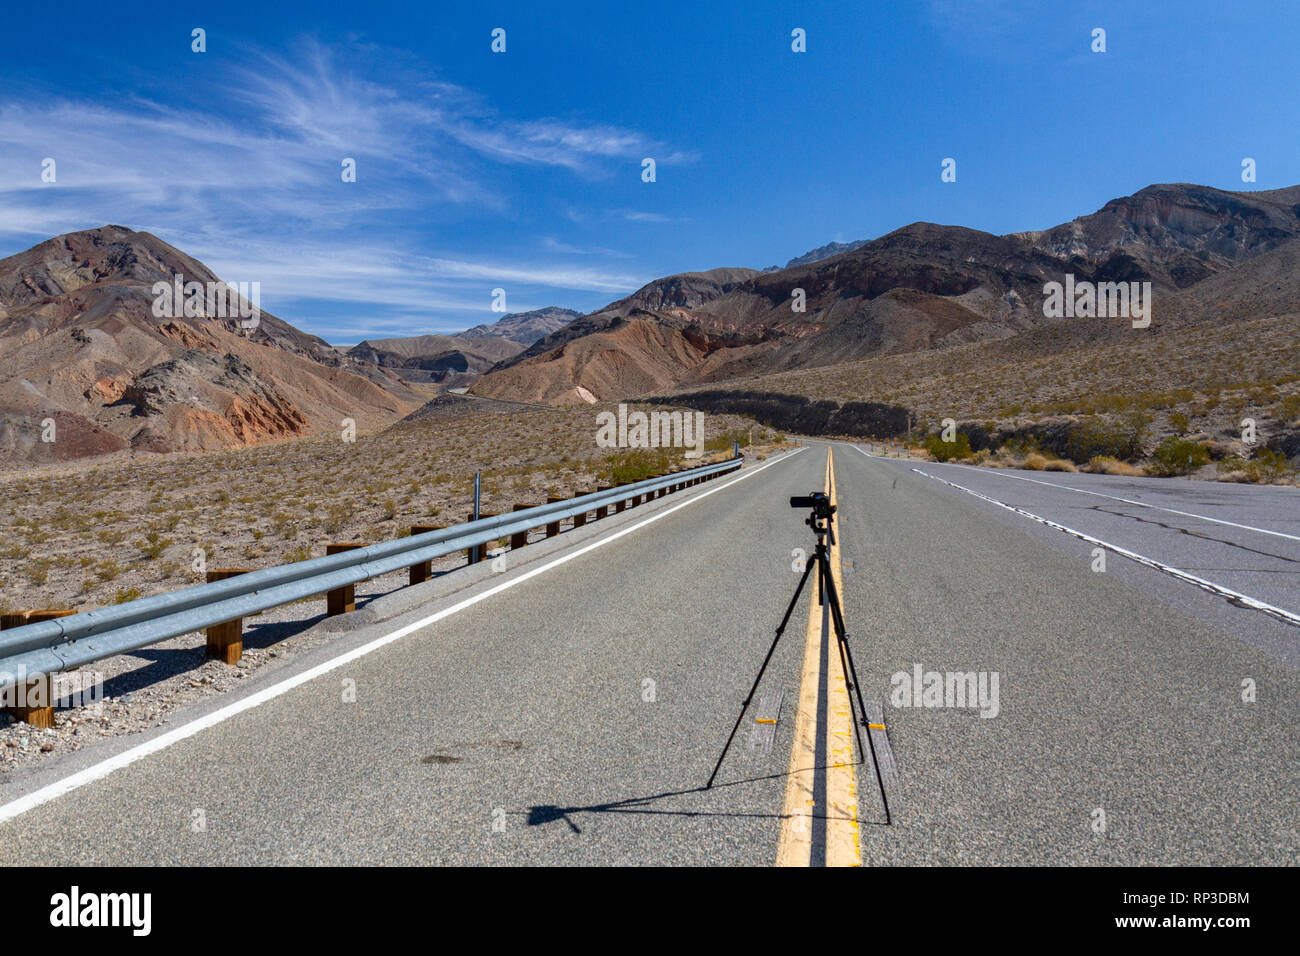 Caméra vidéo mis en place dans le centre de la route vers Towne Pass sur la California State Route 190, Death Valley National Park, CA, USA. Banque D'Images